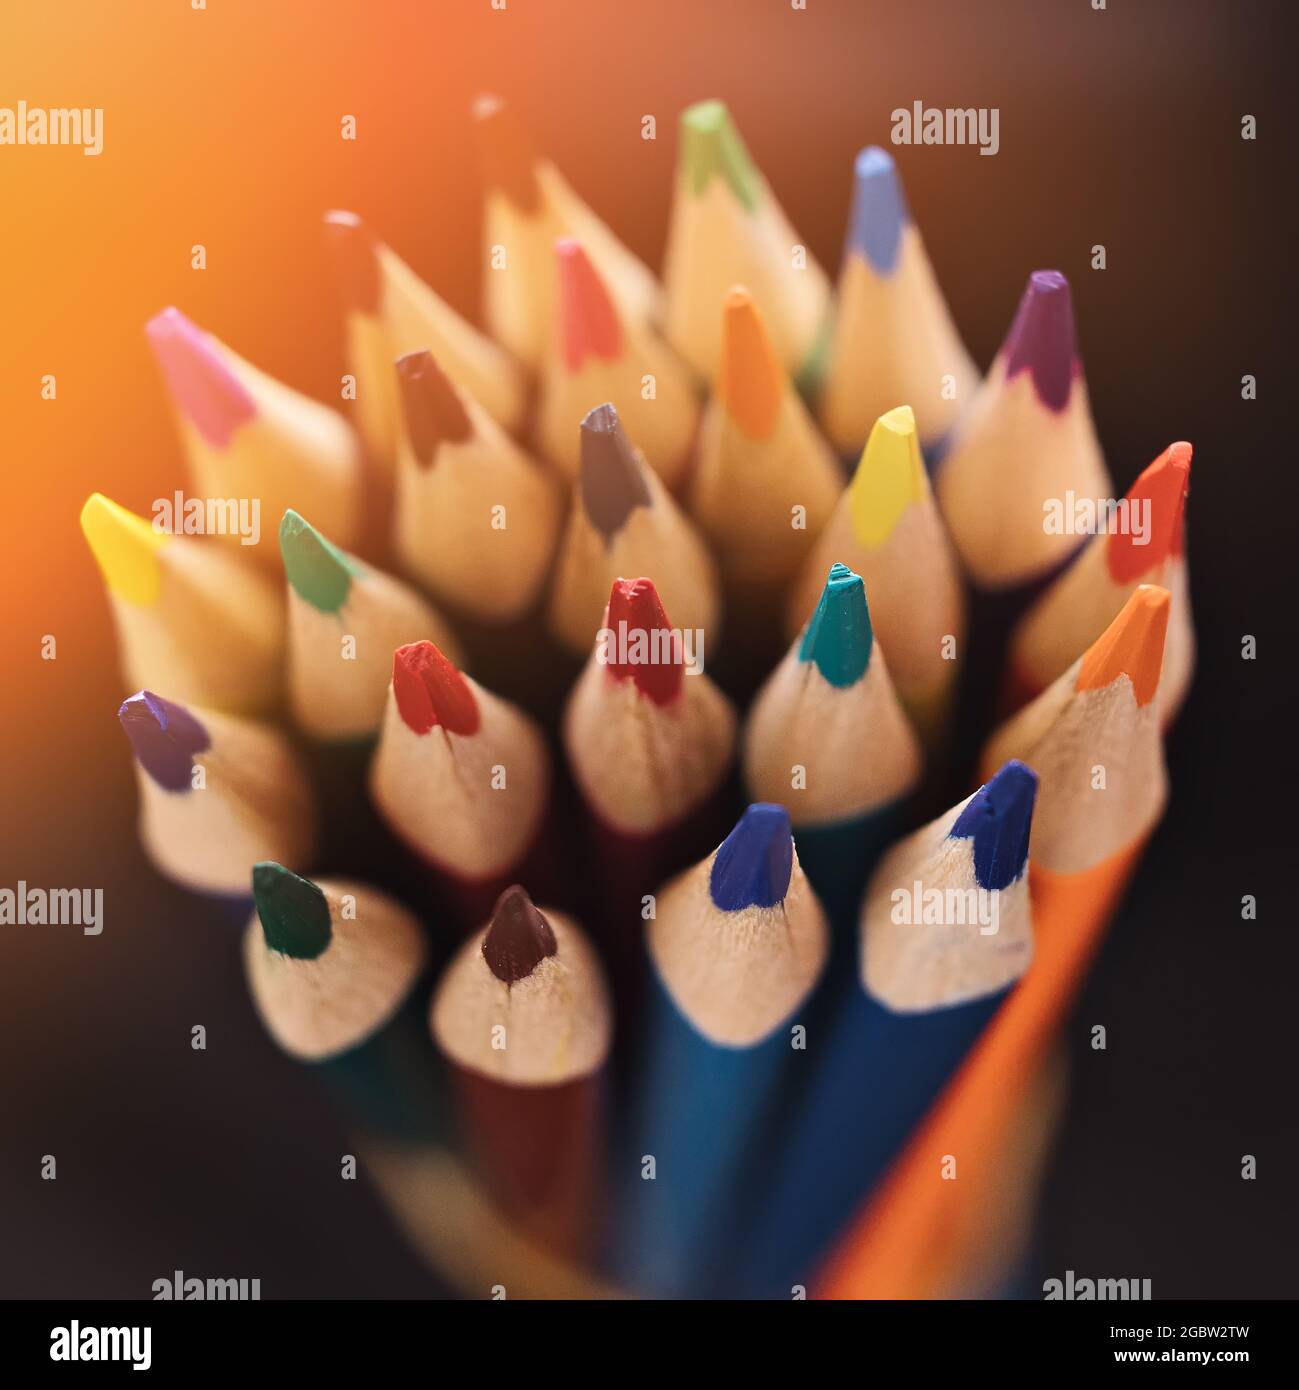 Nouveaux crayons de couleur accentuée sur un fond sombre avec lumière du soleil ou éclairage. Arrière-plan abstrait sur un thème créatif. Retour à l'école. Banque D'Images